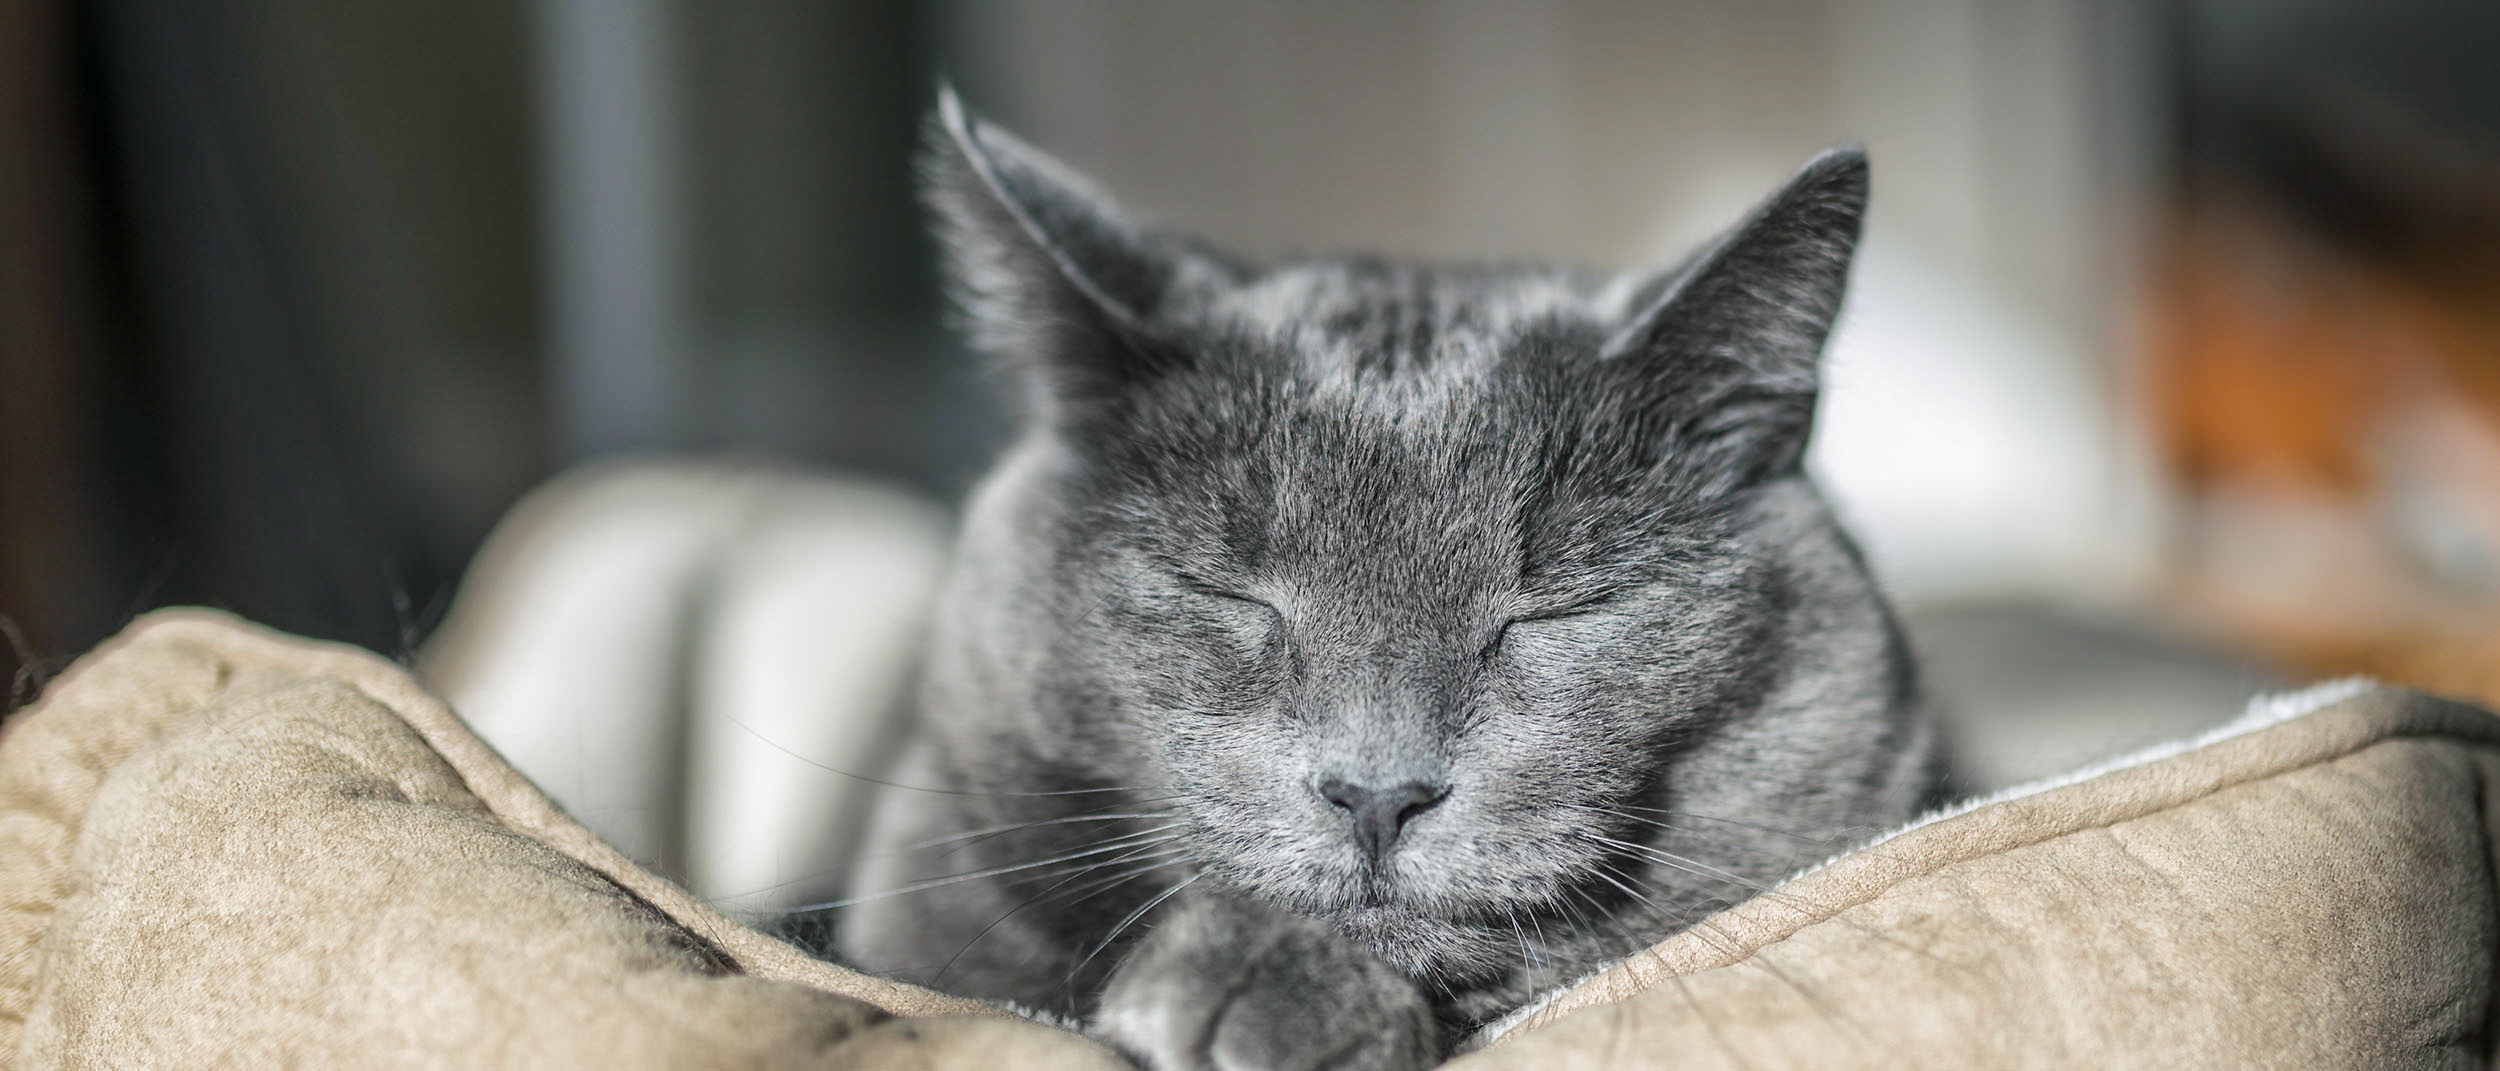 Eine schwarze Katze mit angegrauter Schnauze liegt auf einem Kissen. Sie ist direkt von vorn aufgenommen, sodass nur ihr Kopf scharf ist.